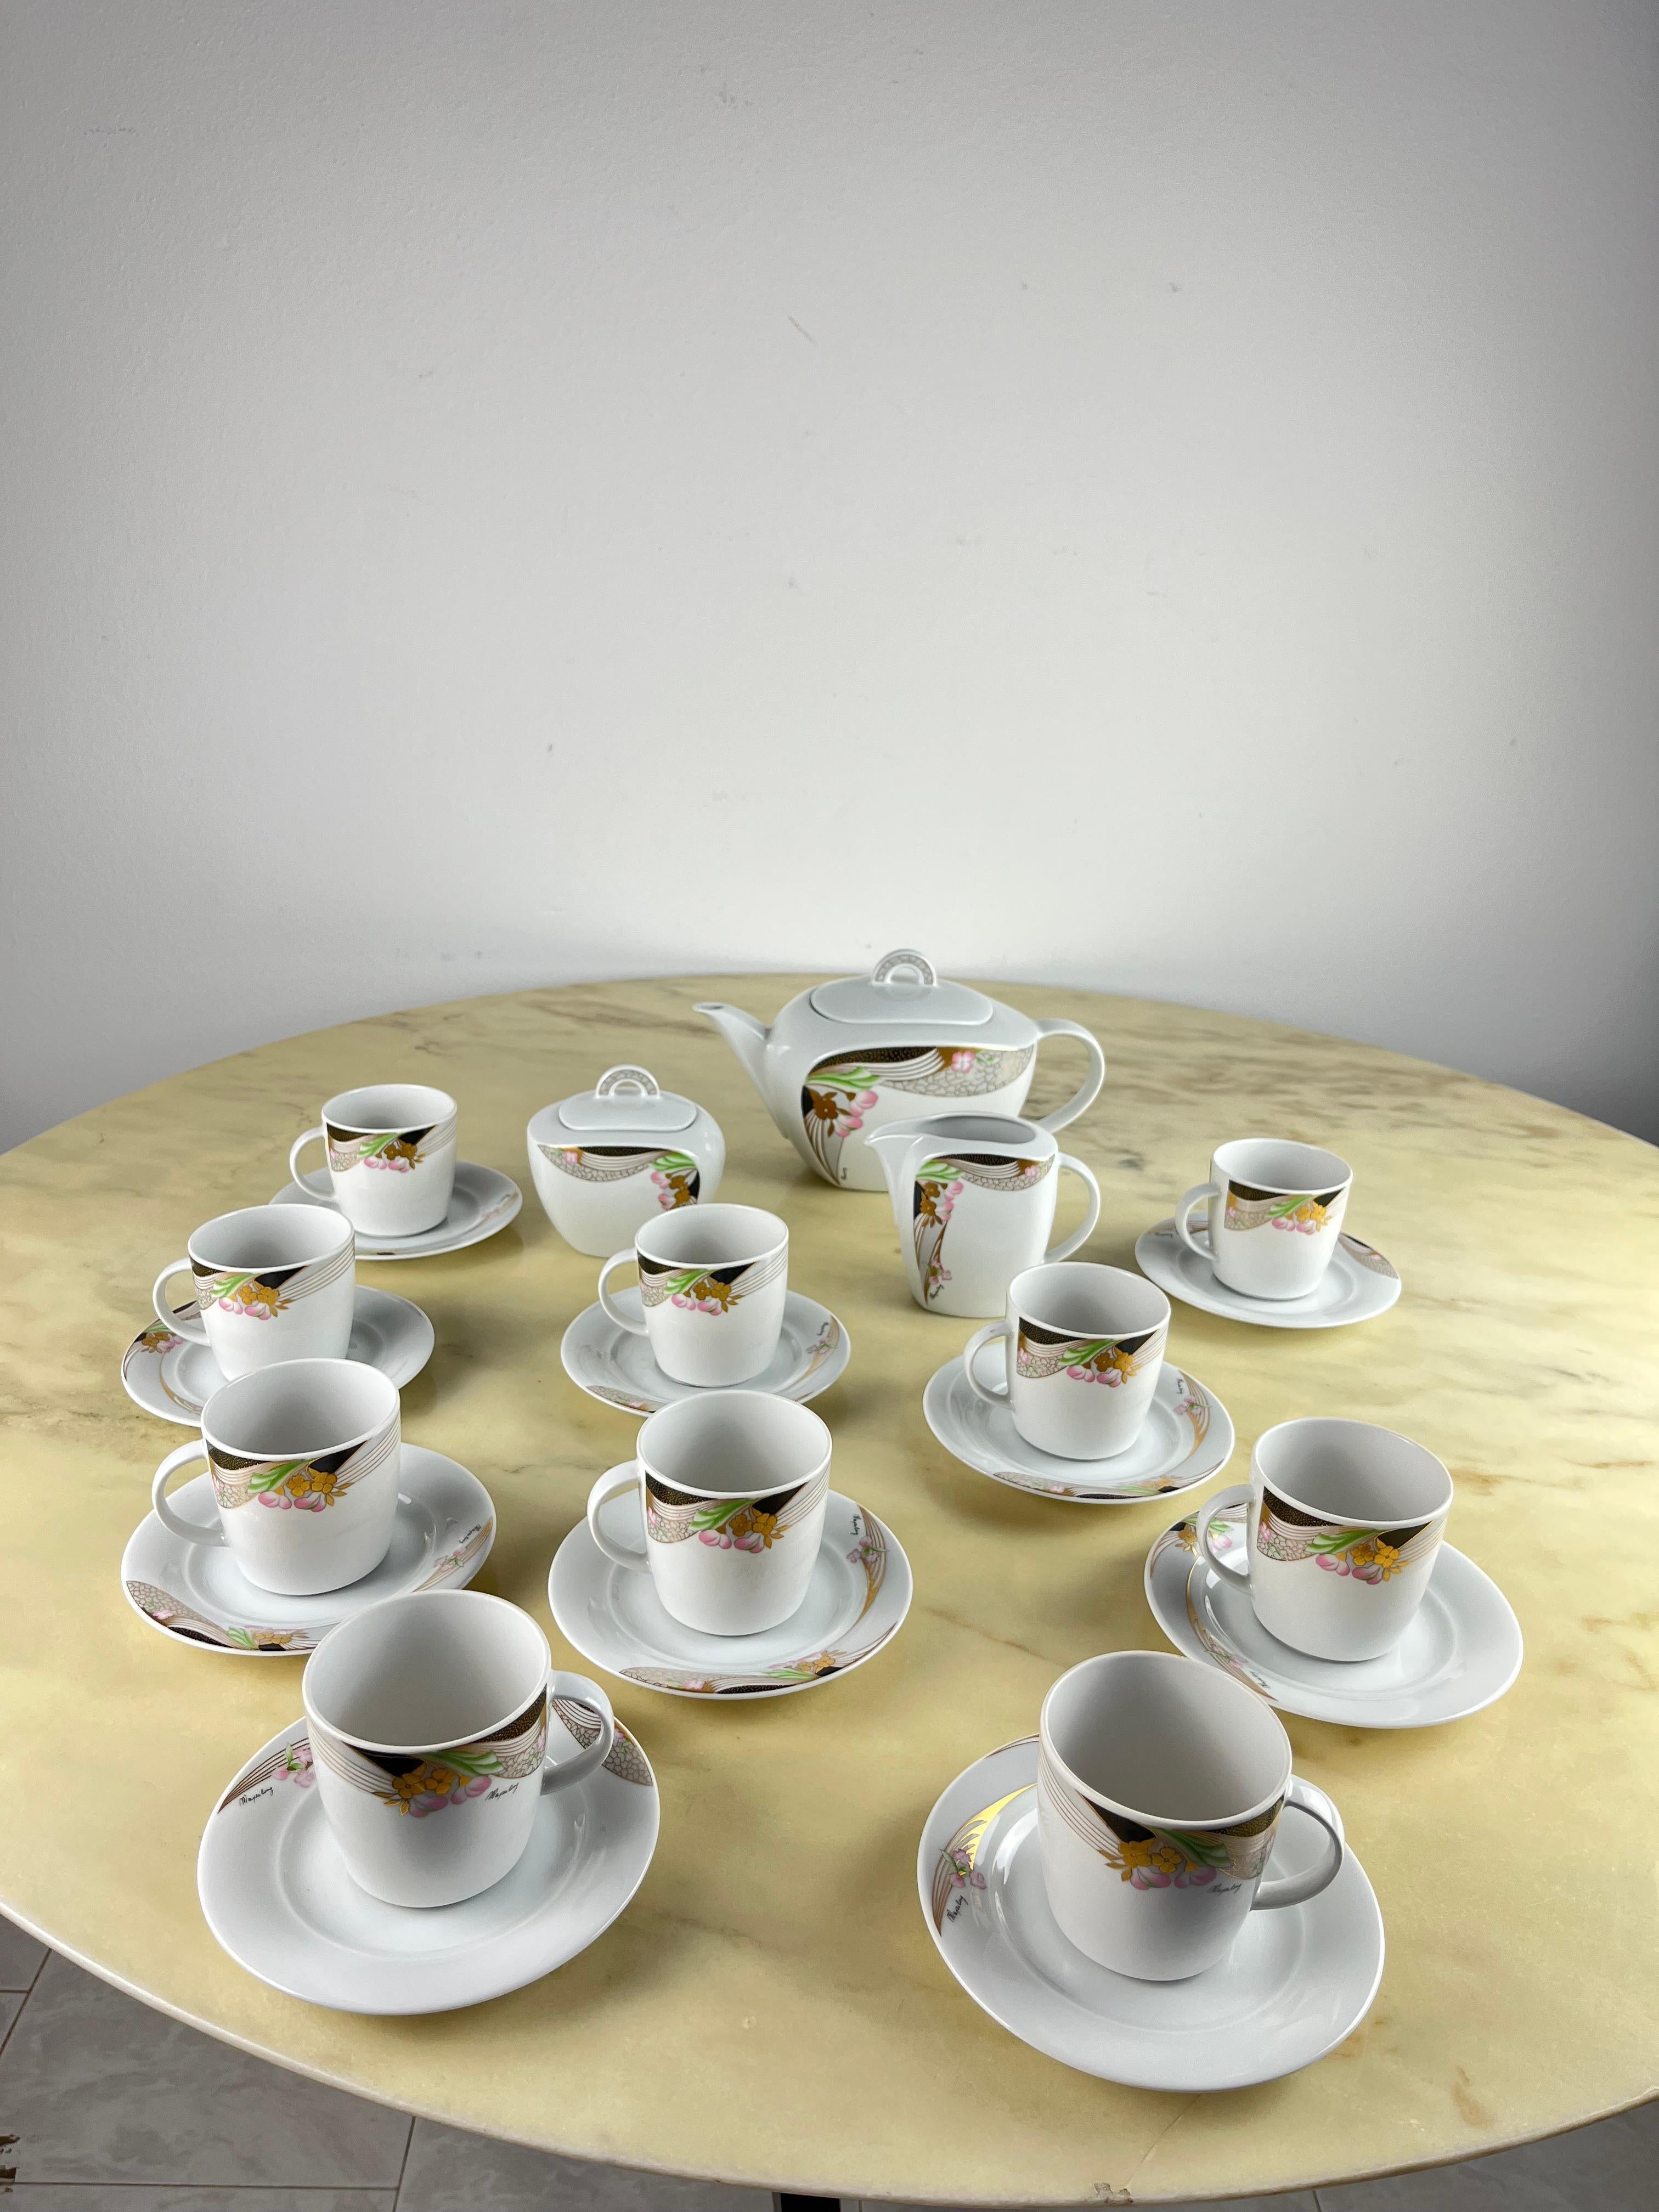 Bavaria Porzellan Teeservice 13-teilig, 80er Jahre
Bestehend aus 10 kompletten Tassen, Teekanne, Milchkännchen und Zuckerdose. Die Teekanne ist 26 cm breit und 16 cm hoch.
Sehr guter Zustand.